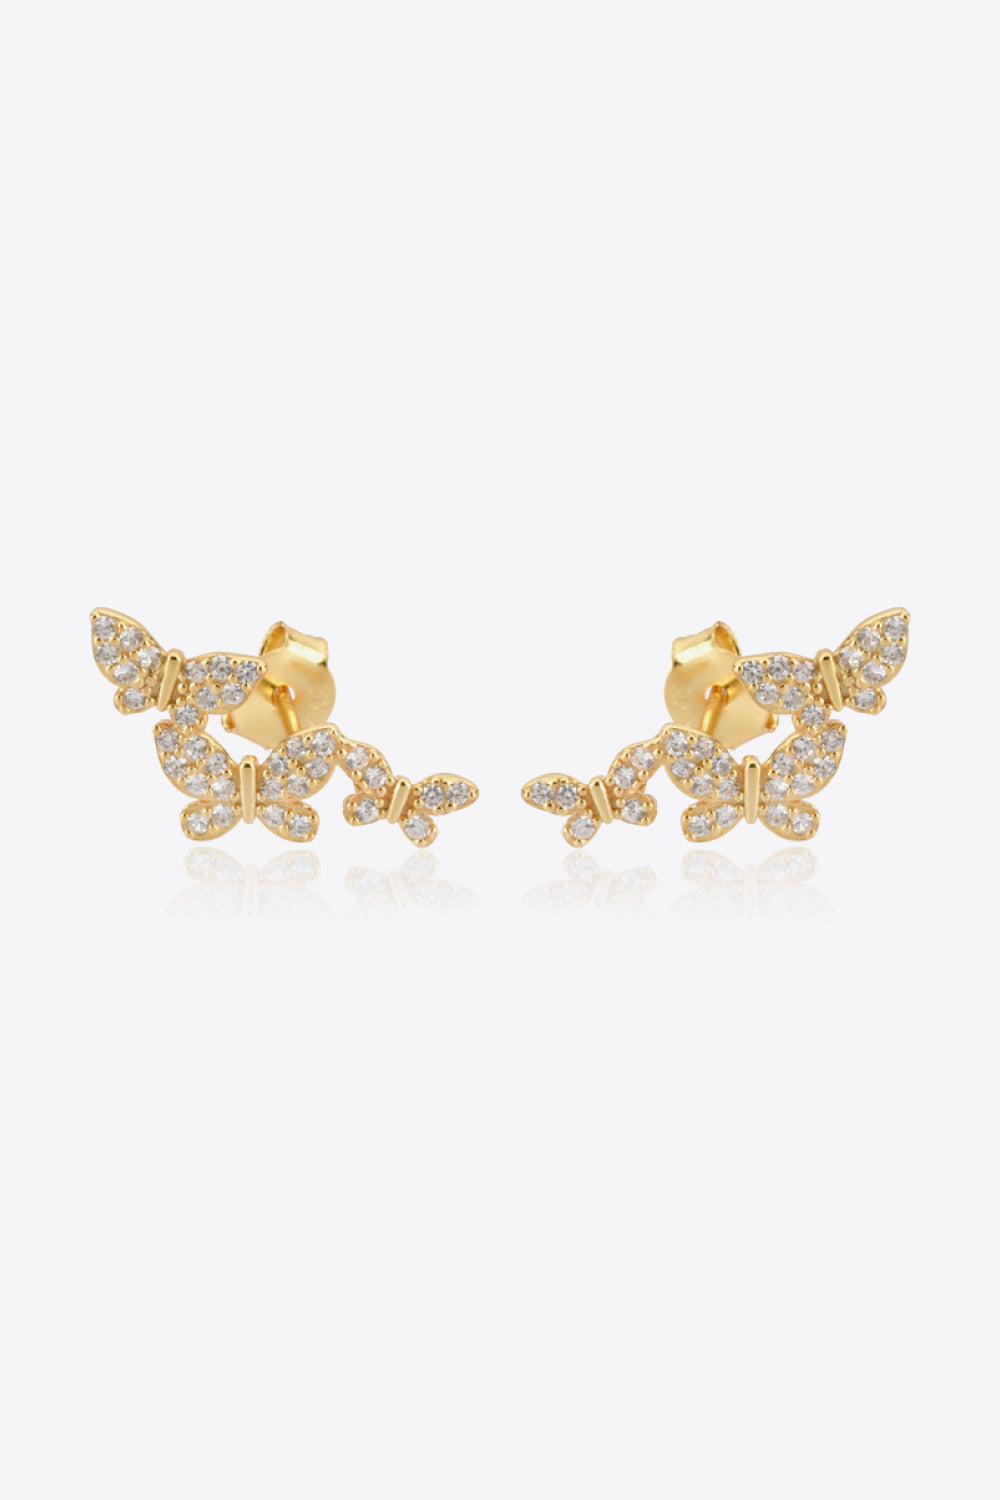 Zircon Butterfly 925 Sterling Silver Earrings - Earrings - FITGGINS